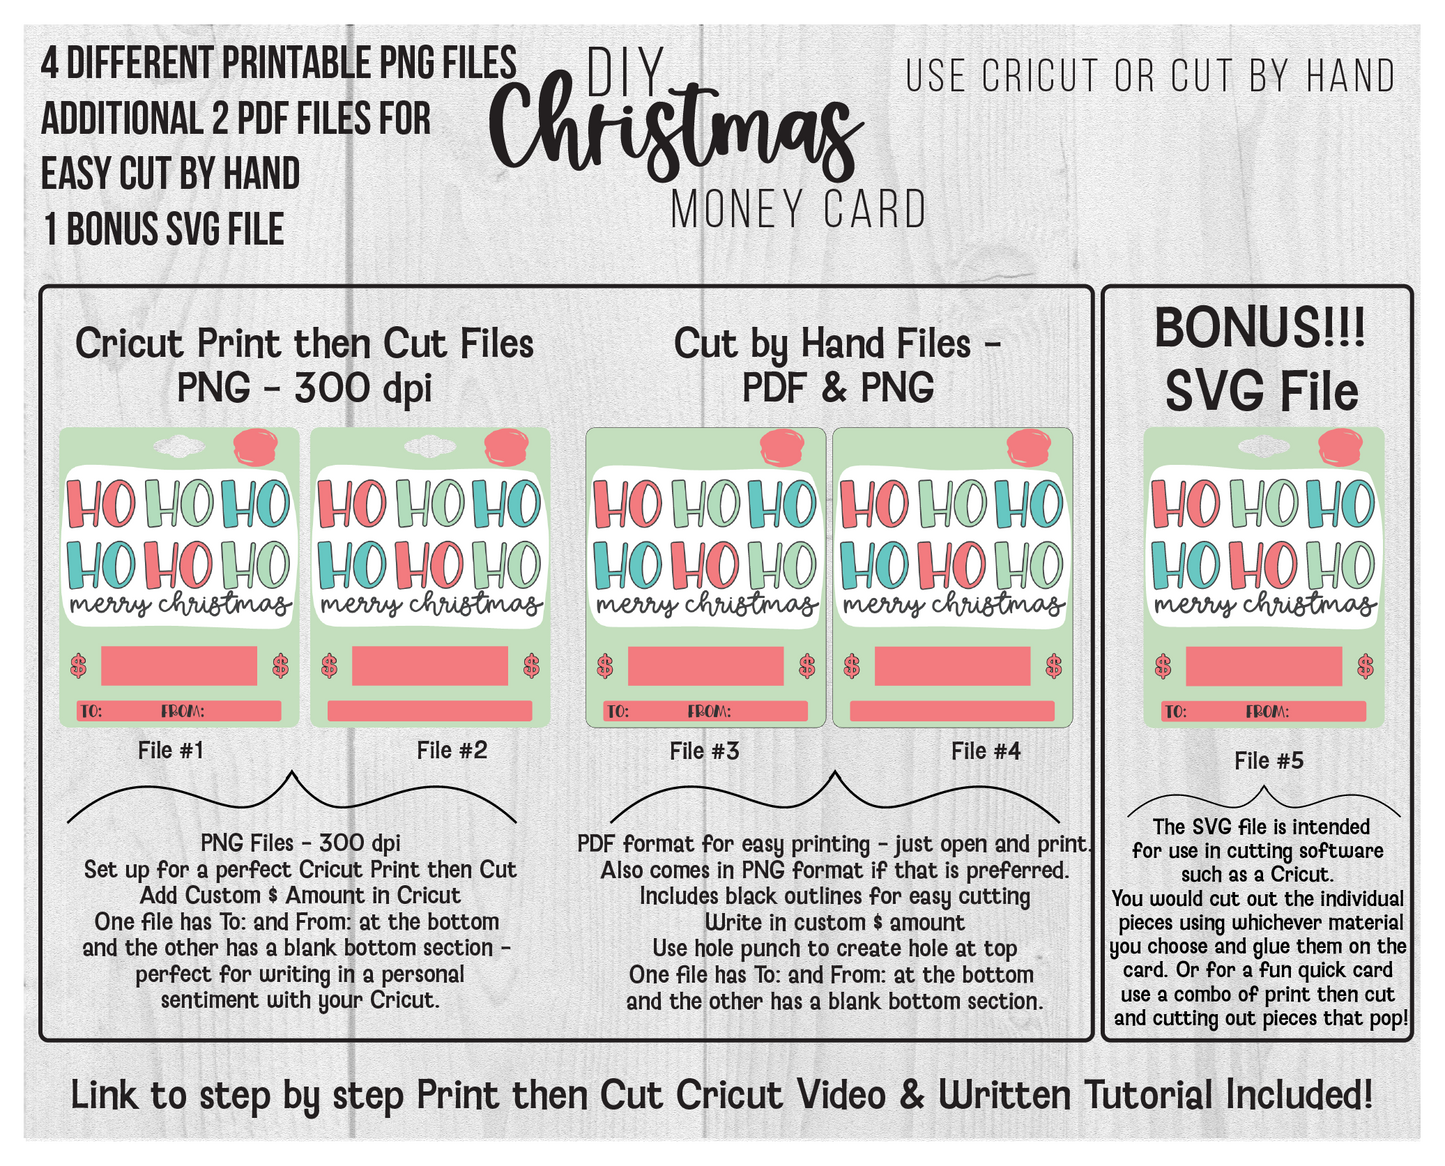 Printable Ho Ho Ho Lip Balm Christmas Money Card Template